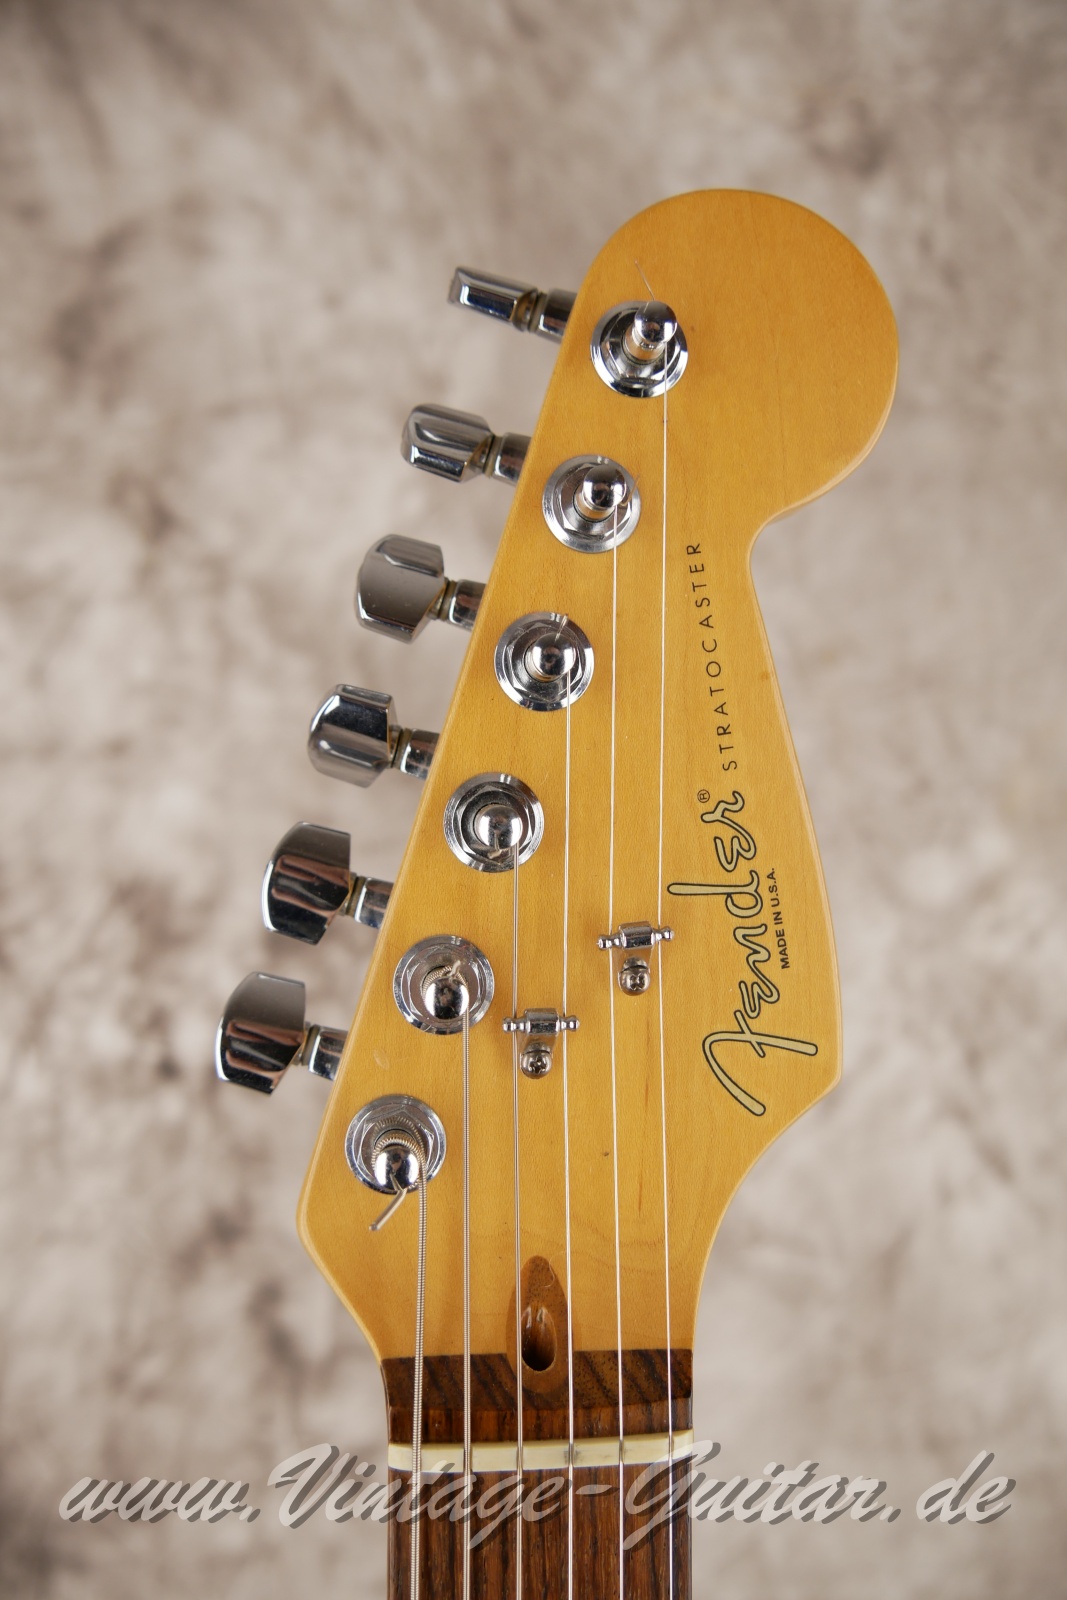 Fender_Stratocaster_US_Lonestar_1997_original_case_black_humbucker-003.jpg